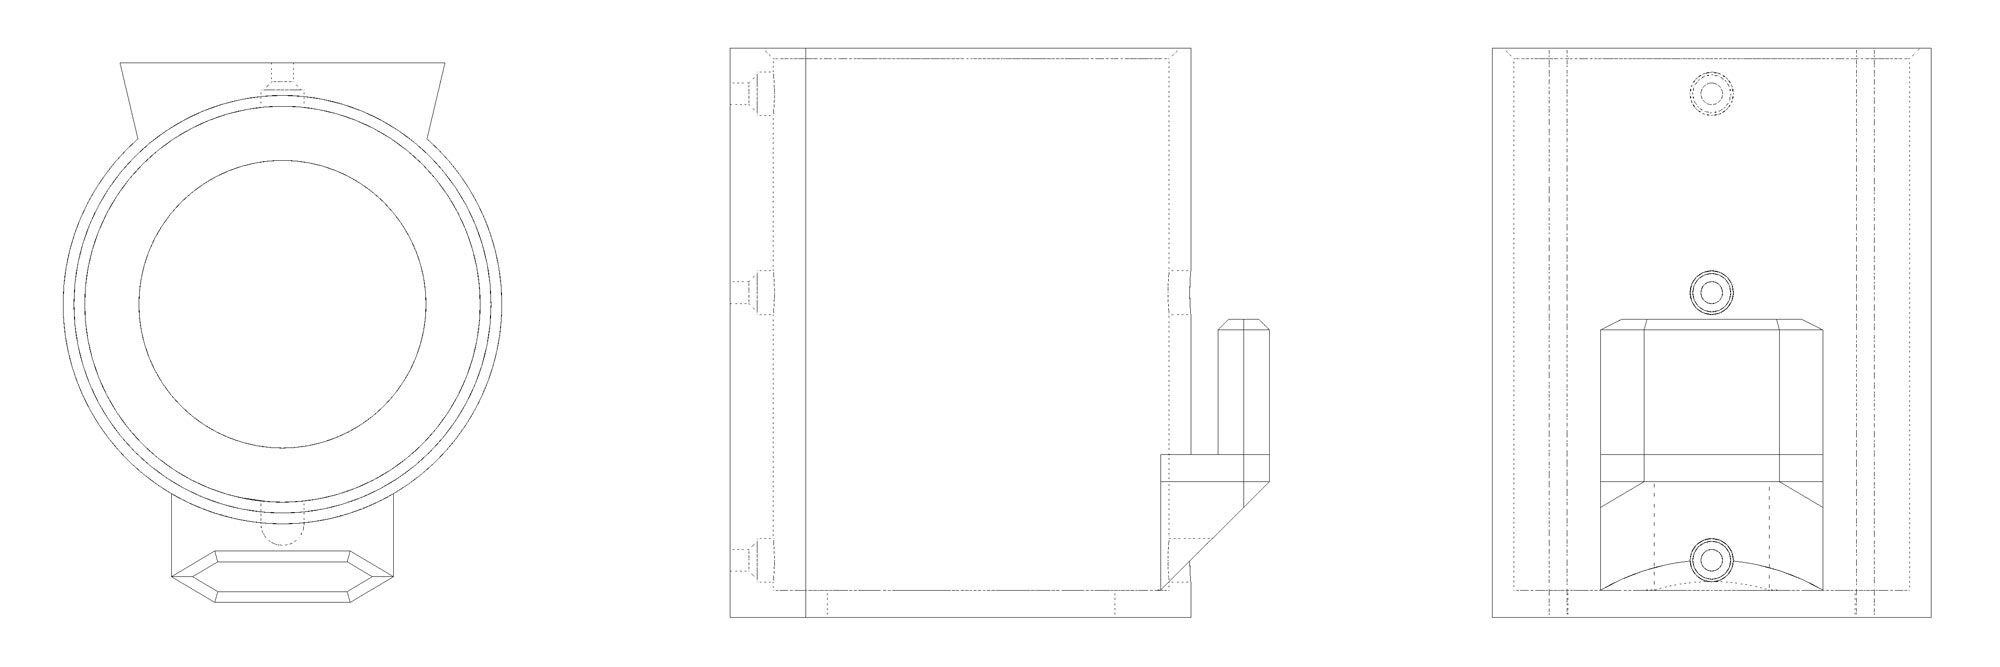 Epk 3d print staubsaugerhalterung sketch | ein paar kreative